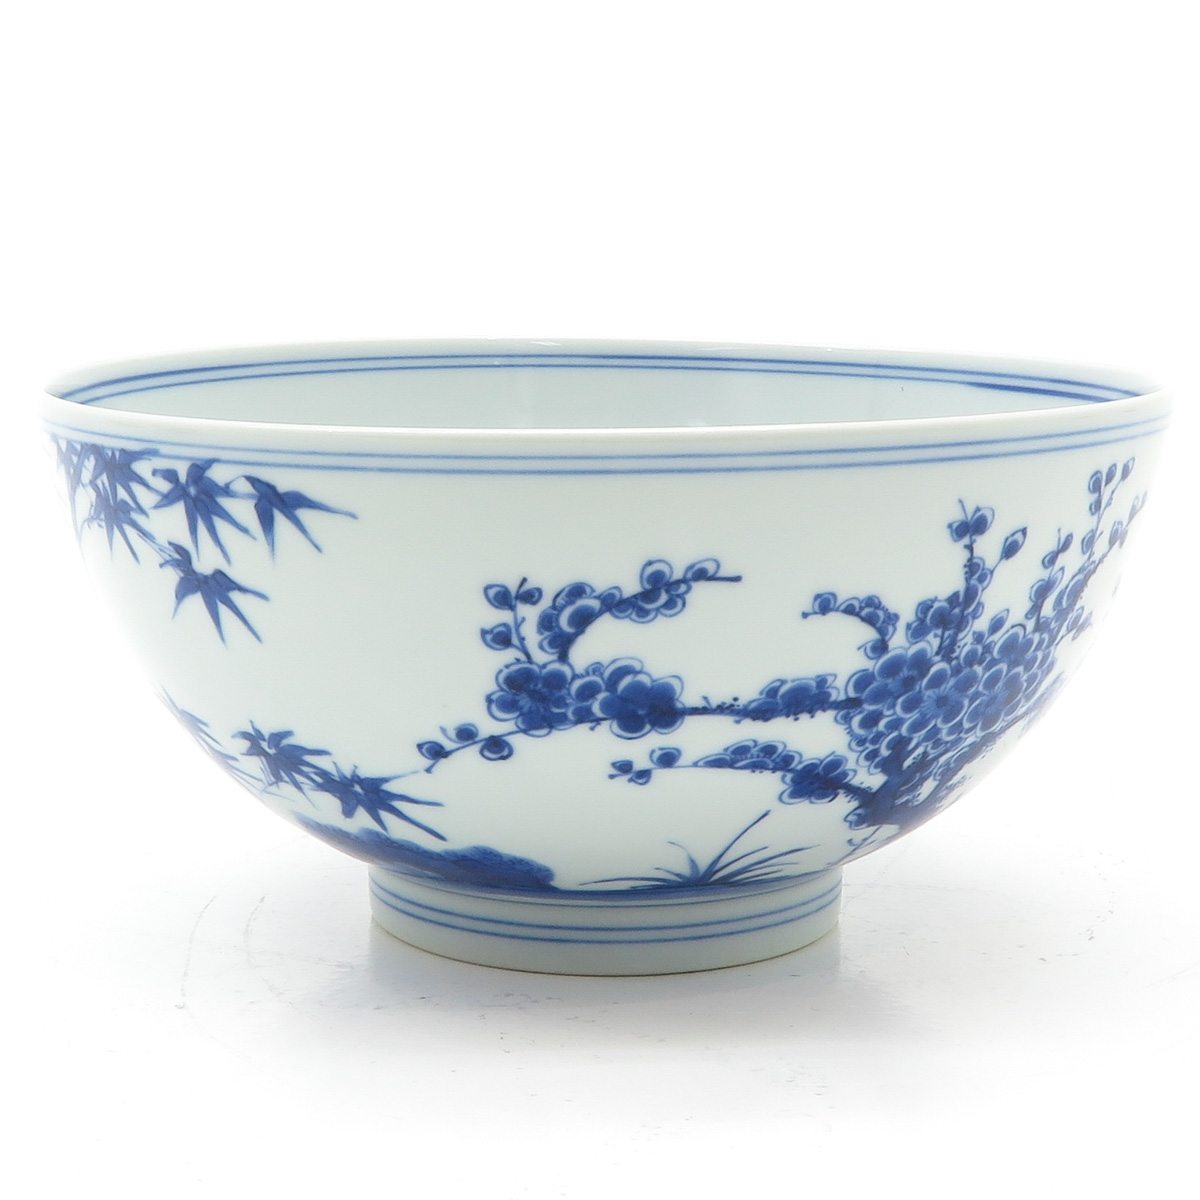 China Porcelain Bowl - Image 3 of 6